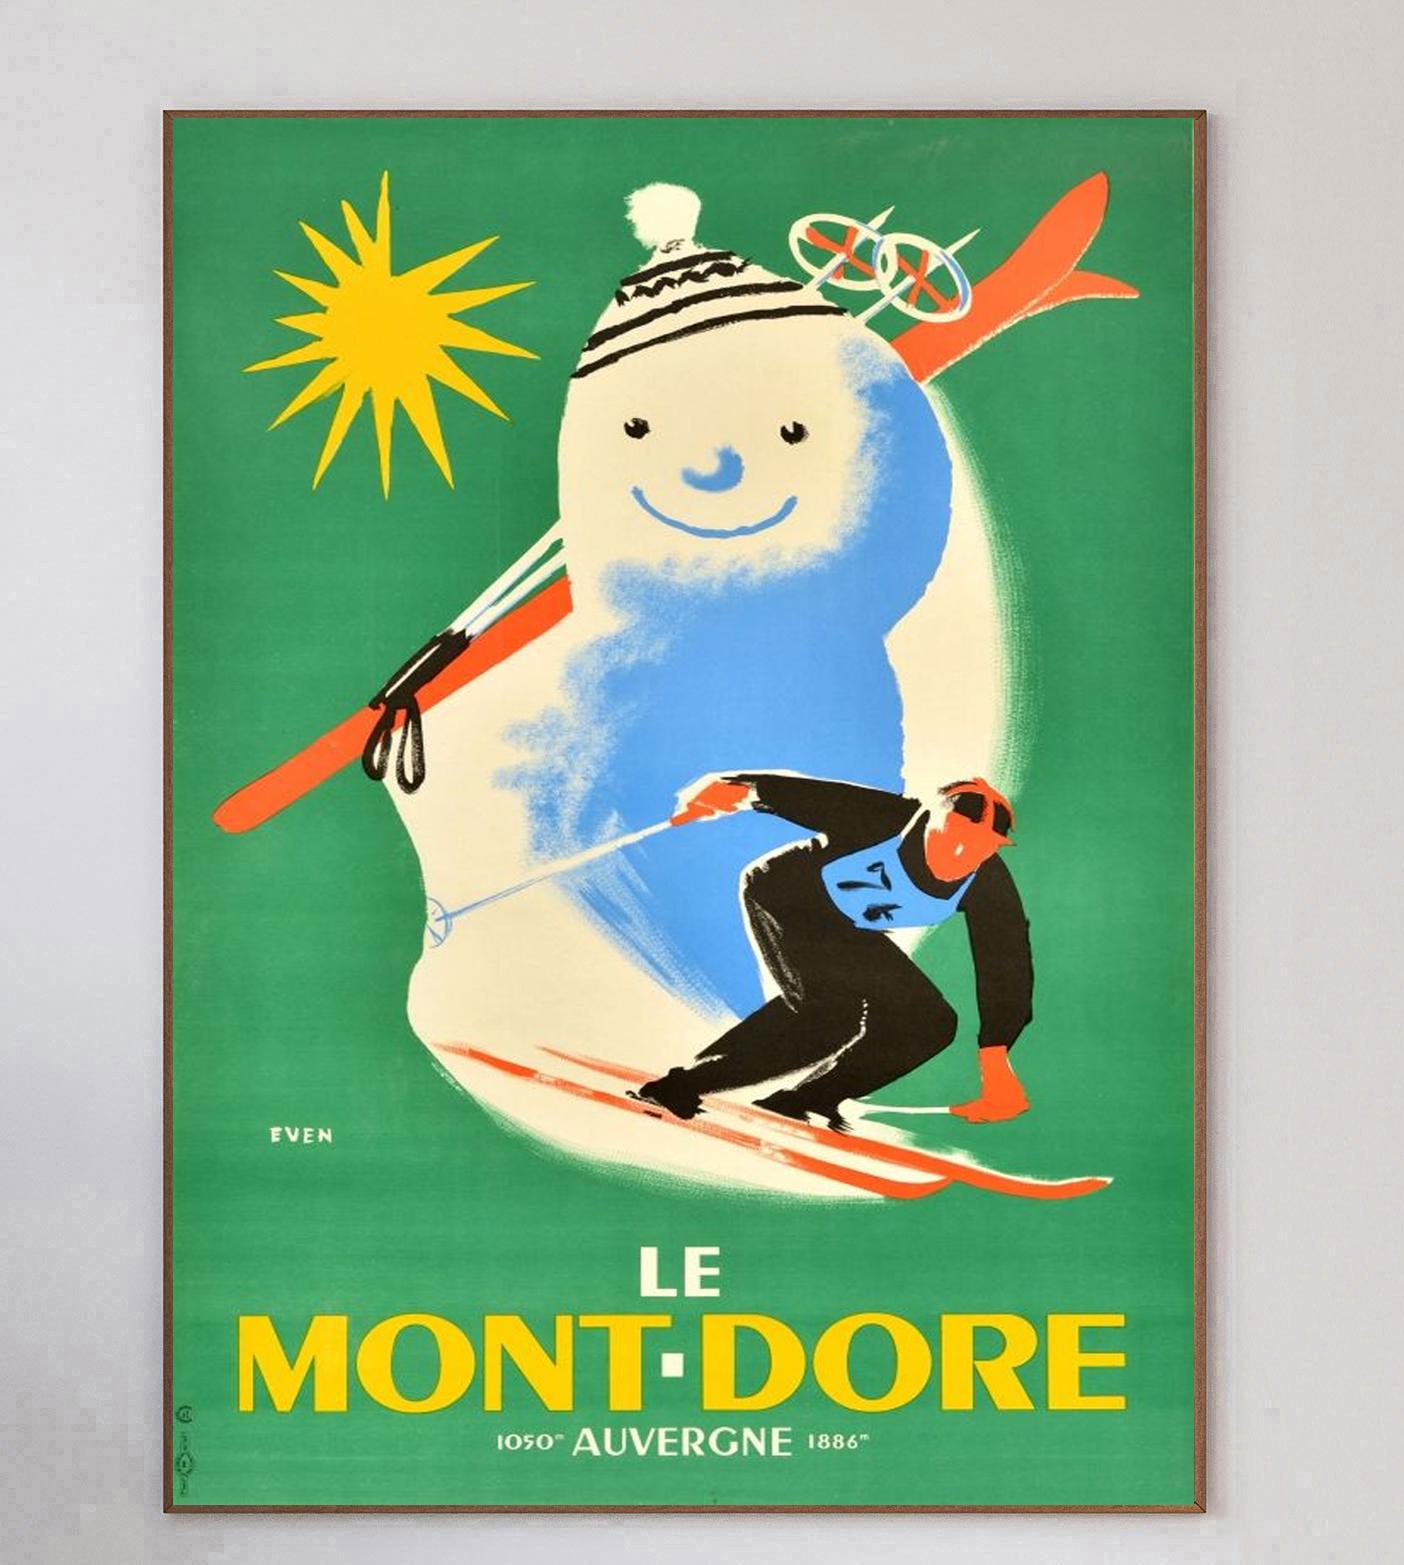 Dieses Plakat mit der beeindruckenden Grafik von Jean Even wurde 1940 erstellt, um für die Region Le Monte-Dore in Auvergne-Rhone-Alpes in Zentralfrankreich zu werben.

Das wunderschöne Design zeigt einen Mann, der die Pisten hinunterfährt, mit